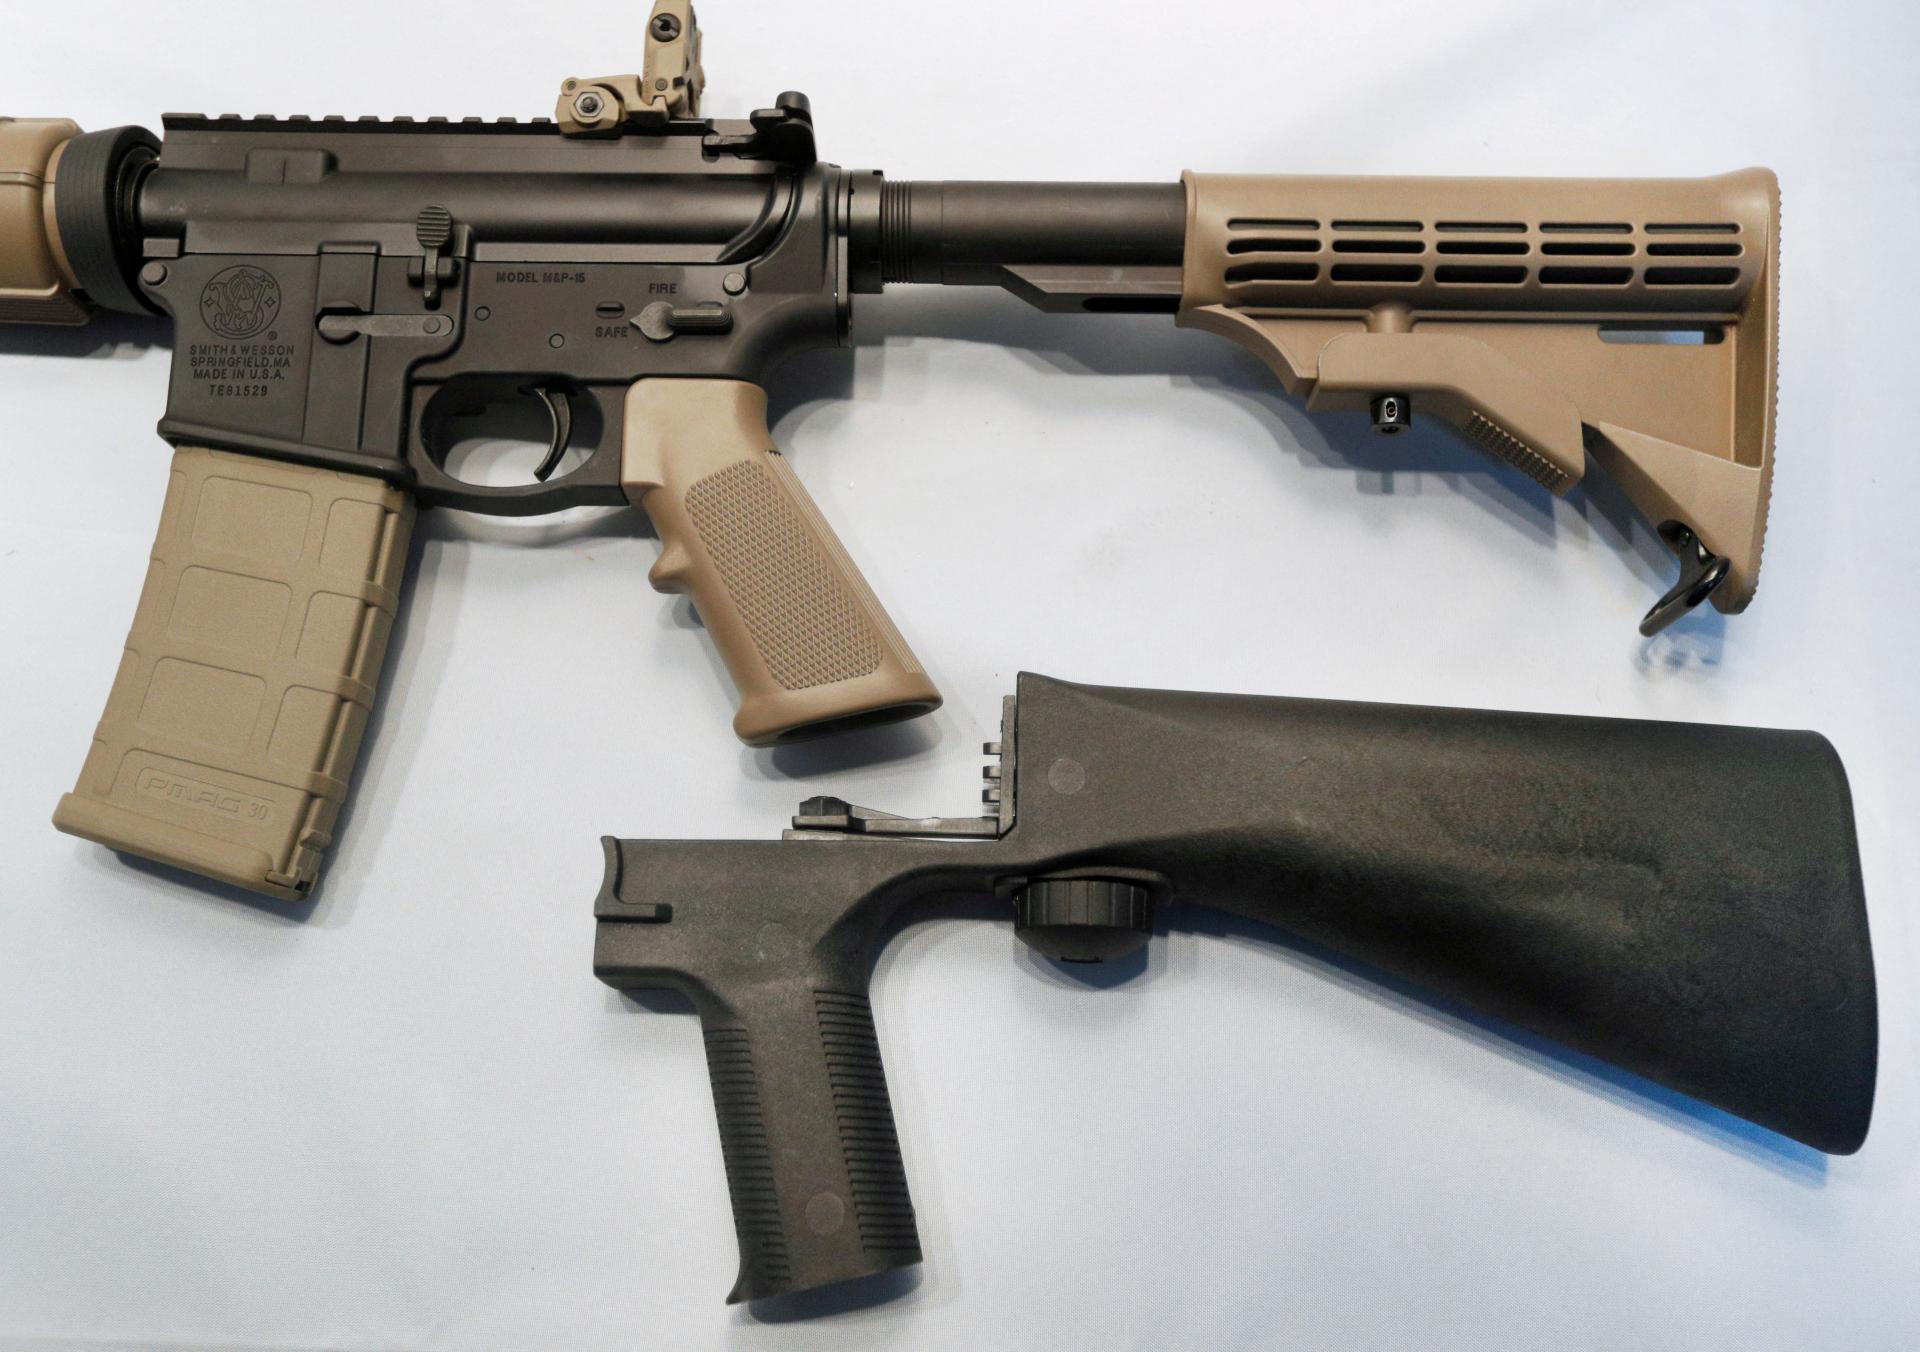 Americký najvyšší súd zrušil zákaz zariadení, ktoré urýchľujú streľbu z pušky. Vláda ho prijala ilegálne